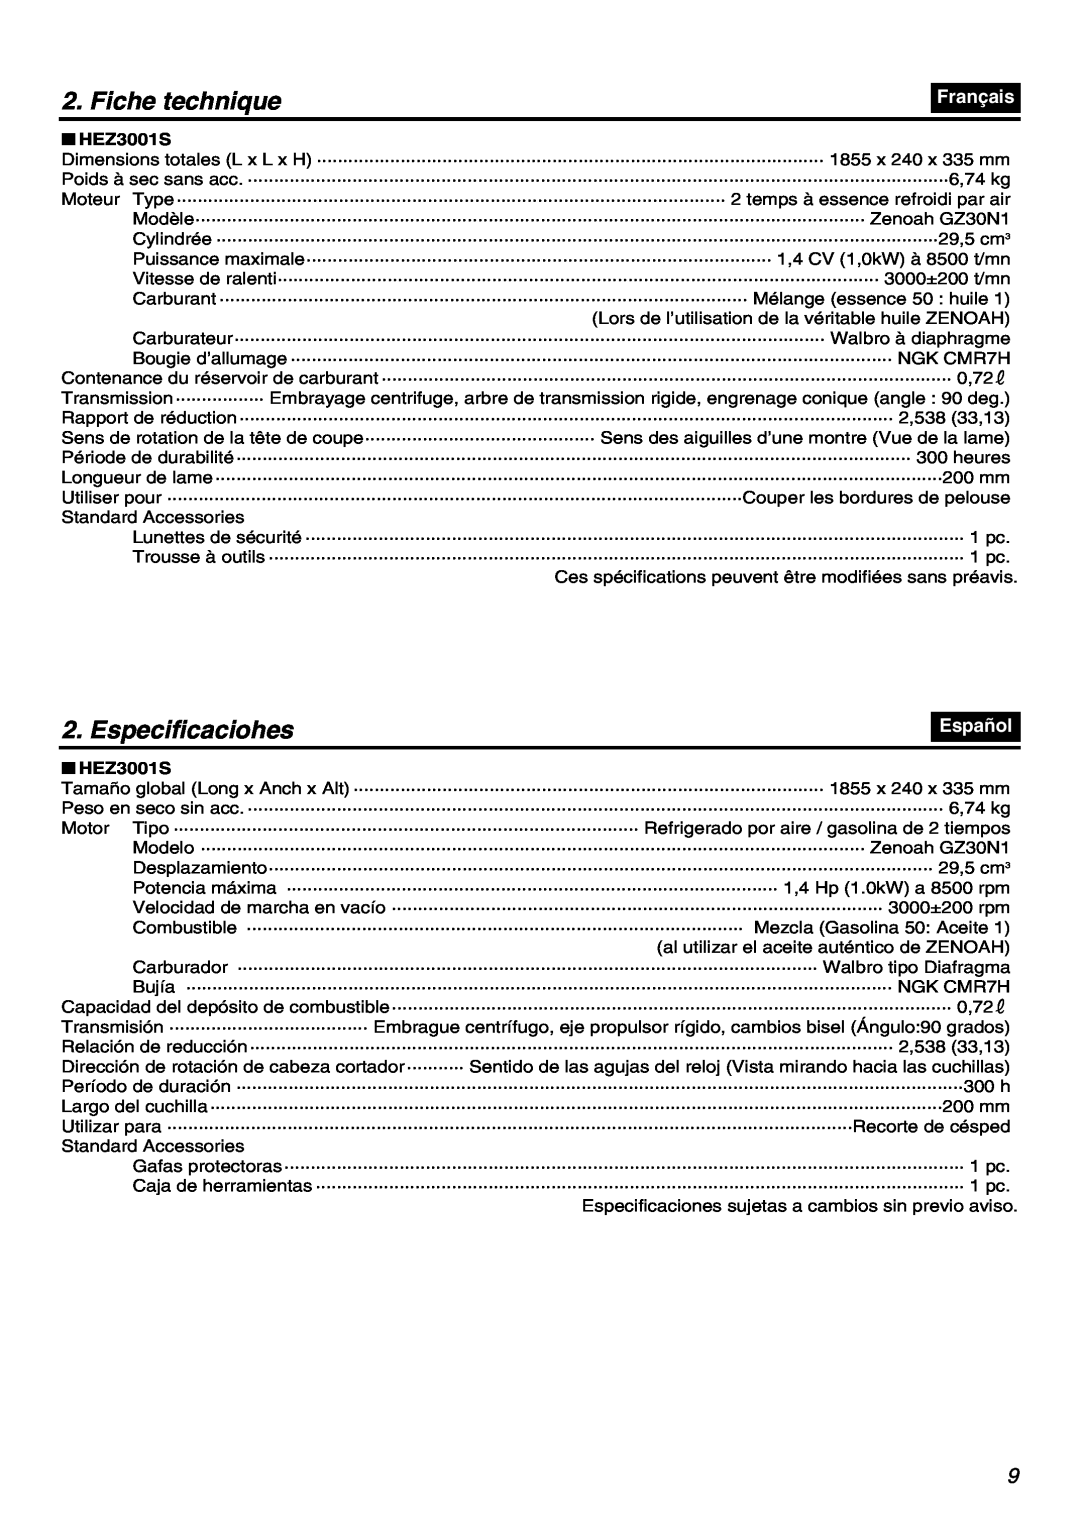 RedMax HEZ3001S, HEZ2602S, HEZ2401S manual Fiche technique, Especificaciohes, Français, Español 